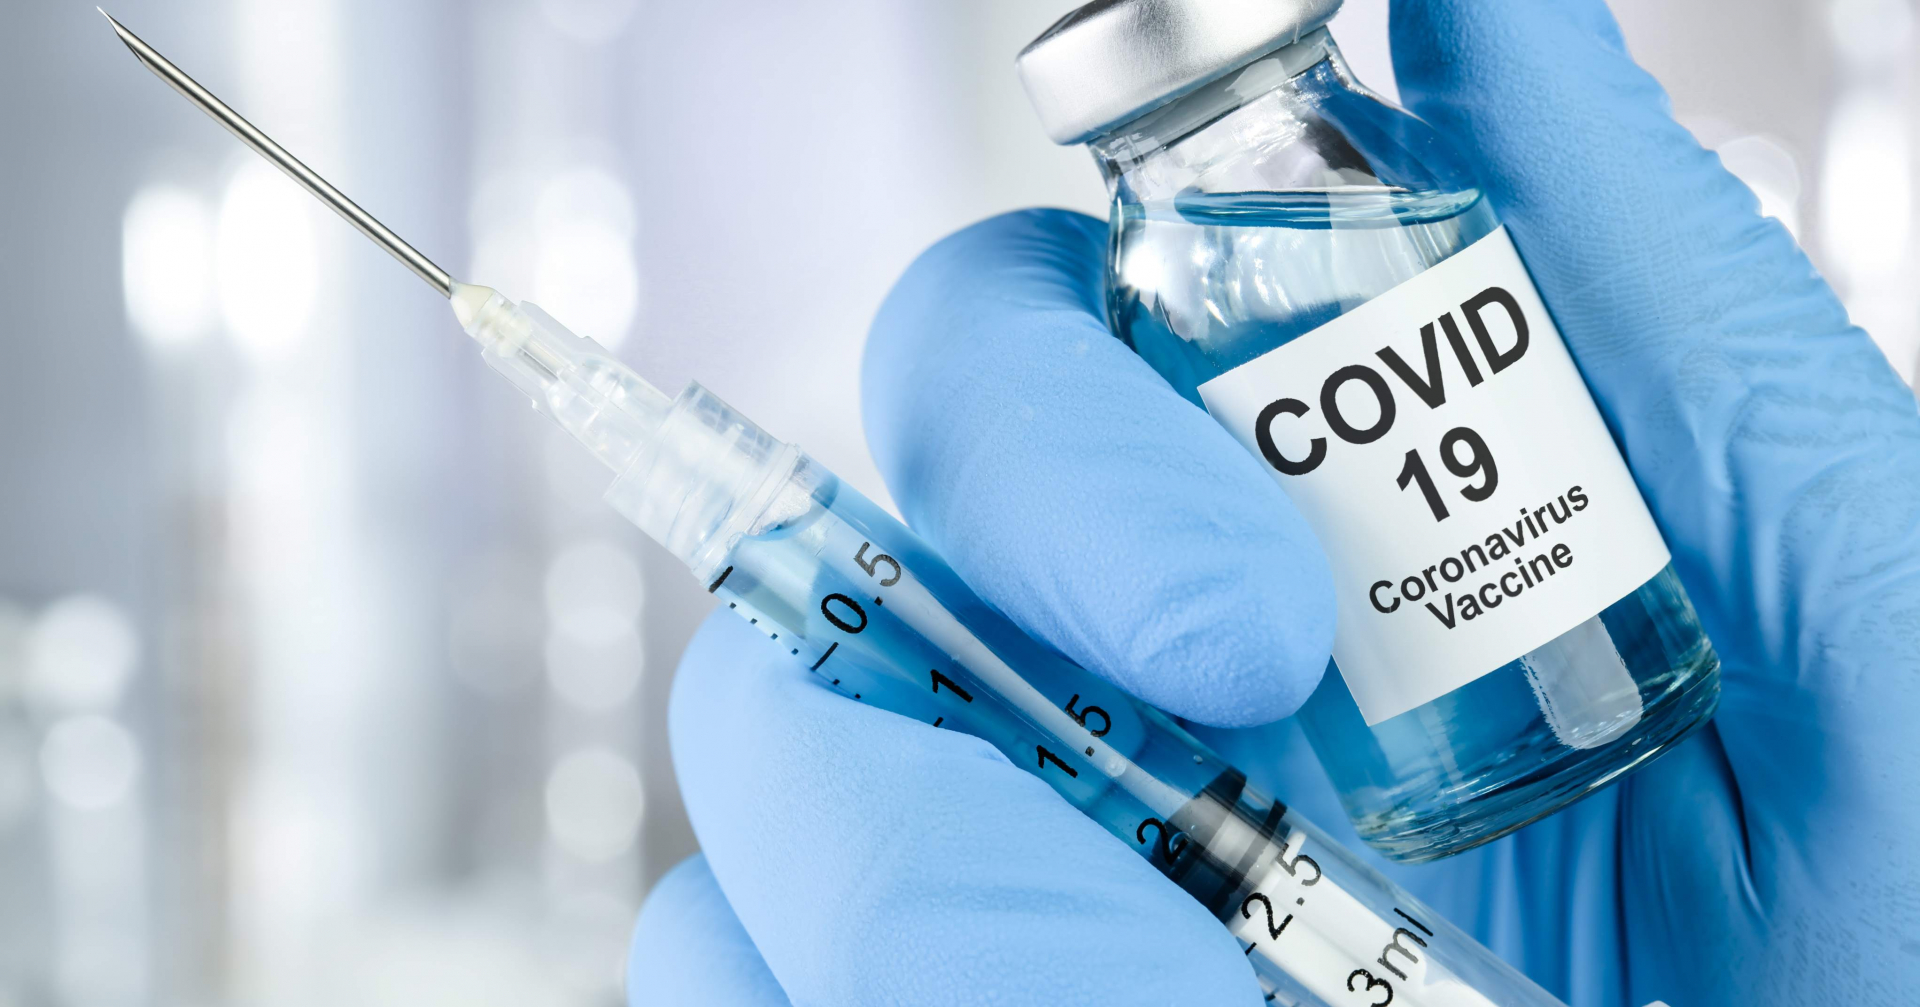 ​Cronaca, Coronavirus e Vaccini: somministrazione sbagliata a Pistoia. Nessun problema per la salute.